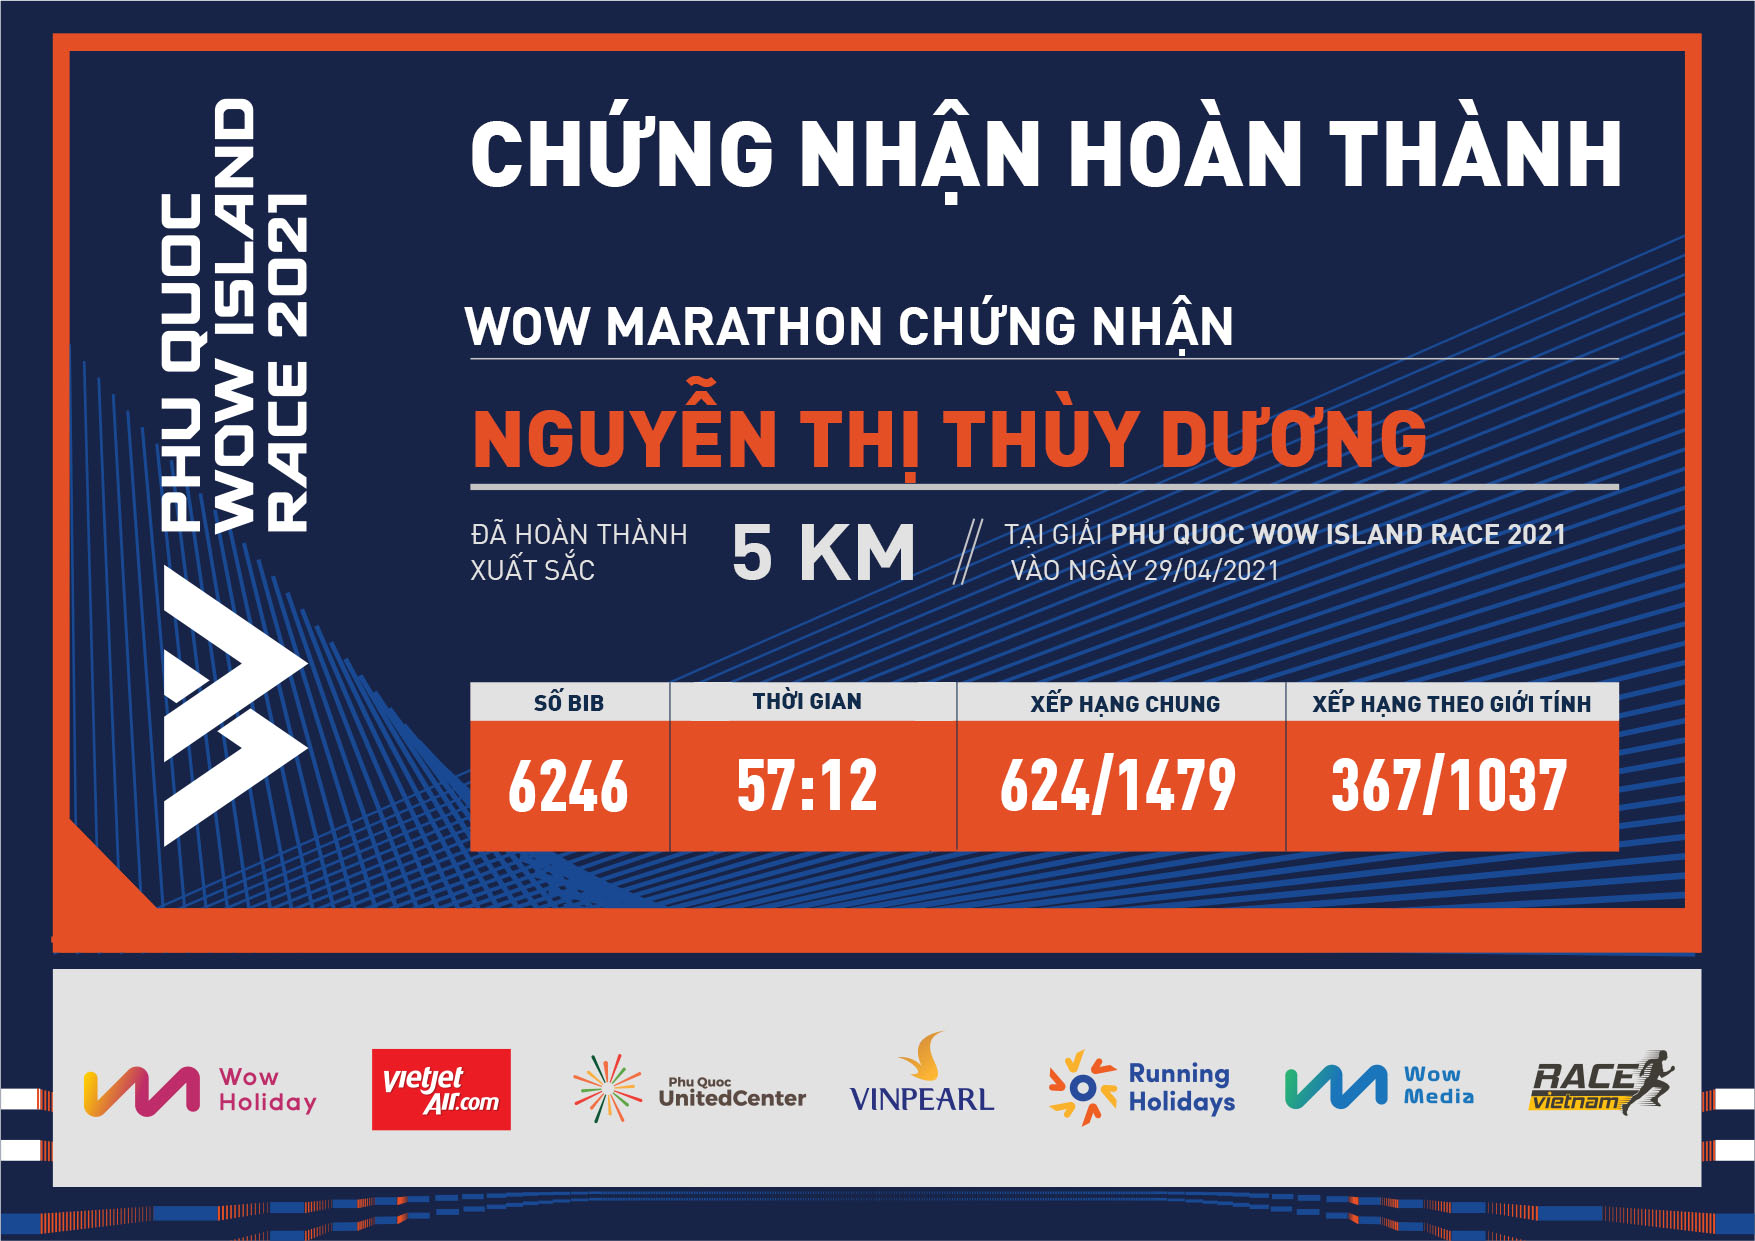 6246 - Nguyễn Thị Thùy Dương